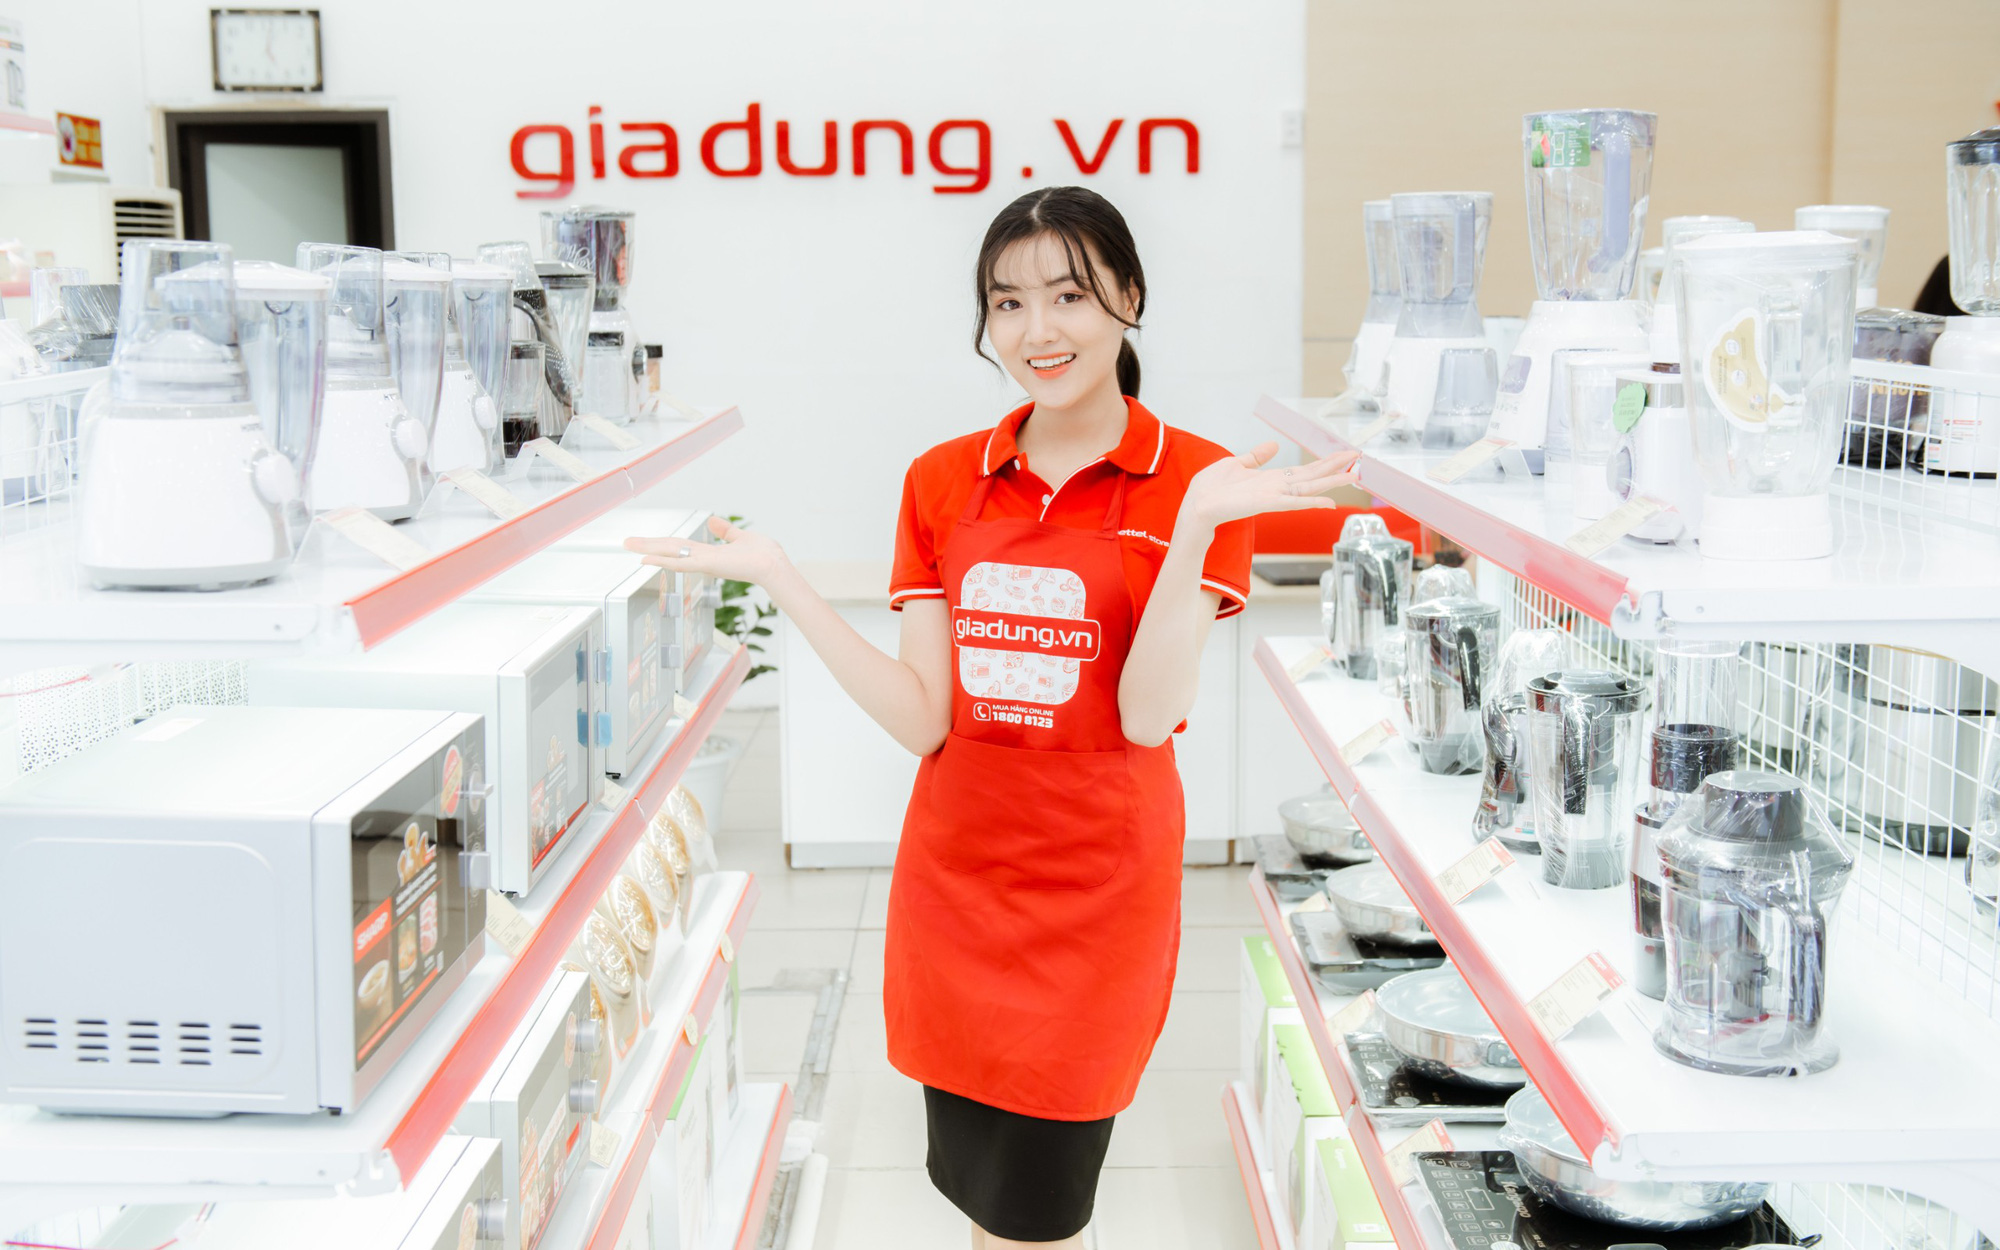 Hệ thống bán lẻ Viettel chính thức ra mắt chuỗi cửa hàng giadung.vn với 100 điểm bán đầu tiên